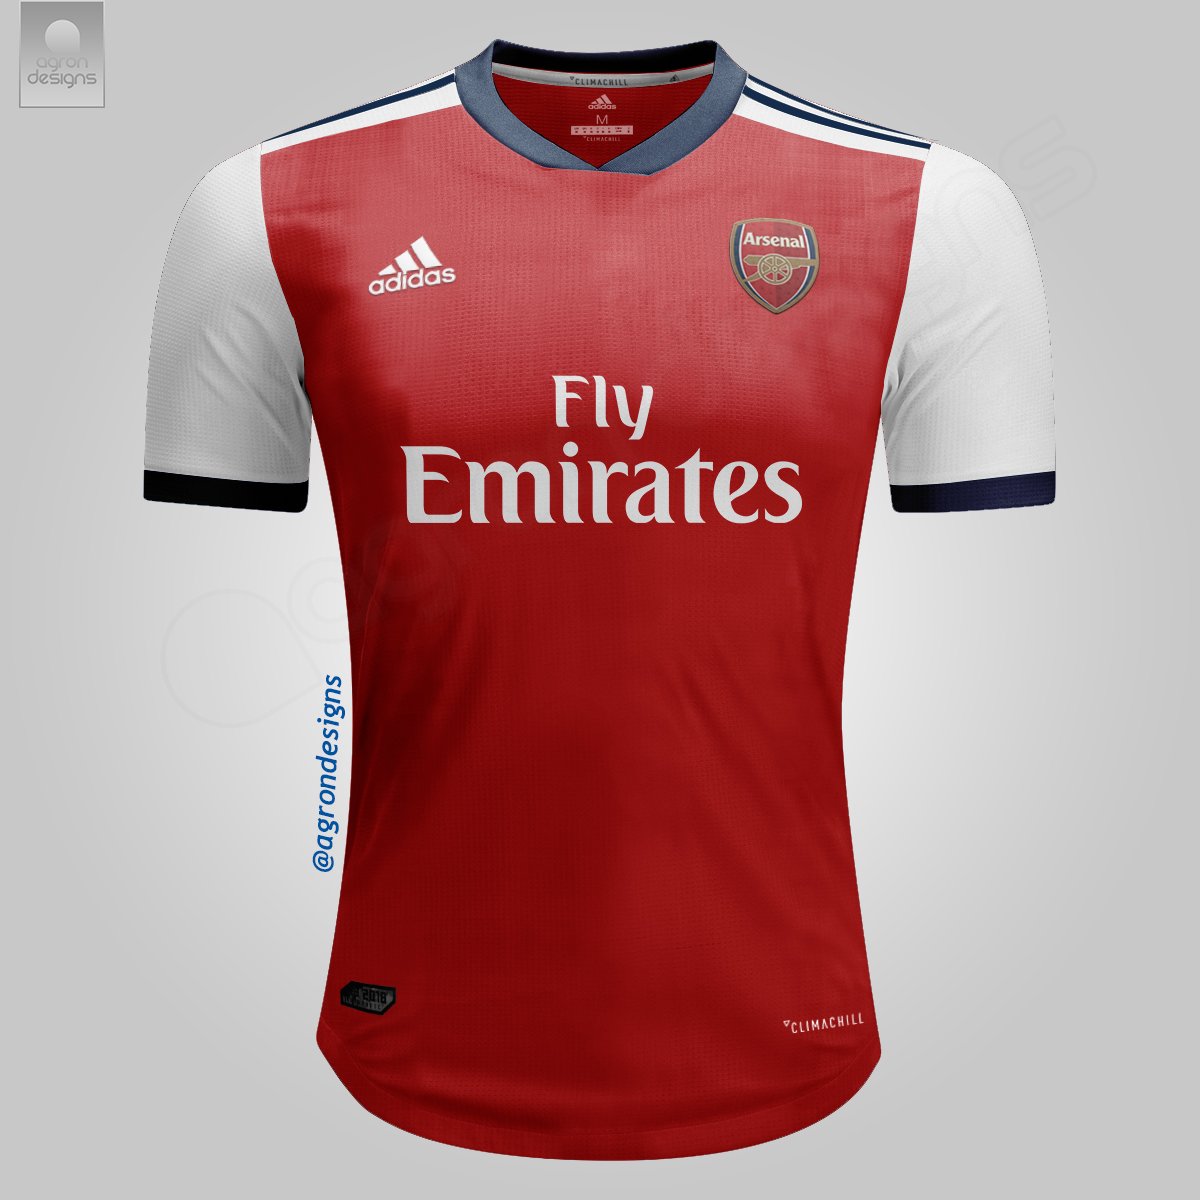 Arsenal ficha por adidas y estos serían sus posibles jerseys 2